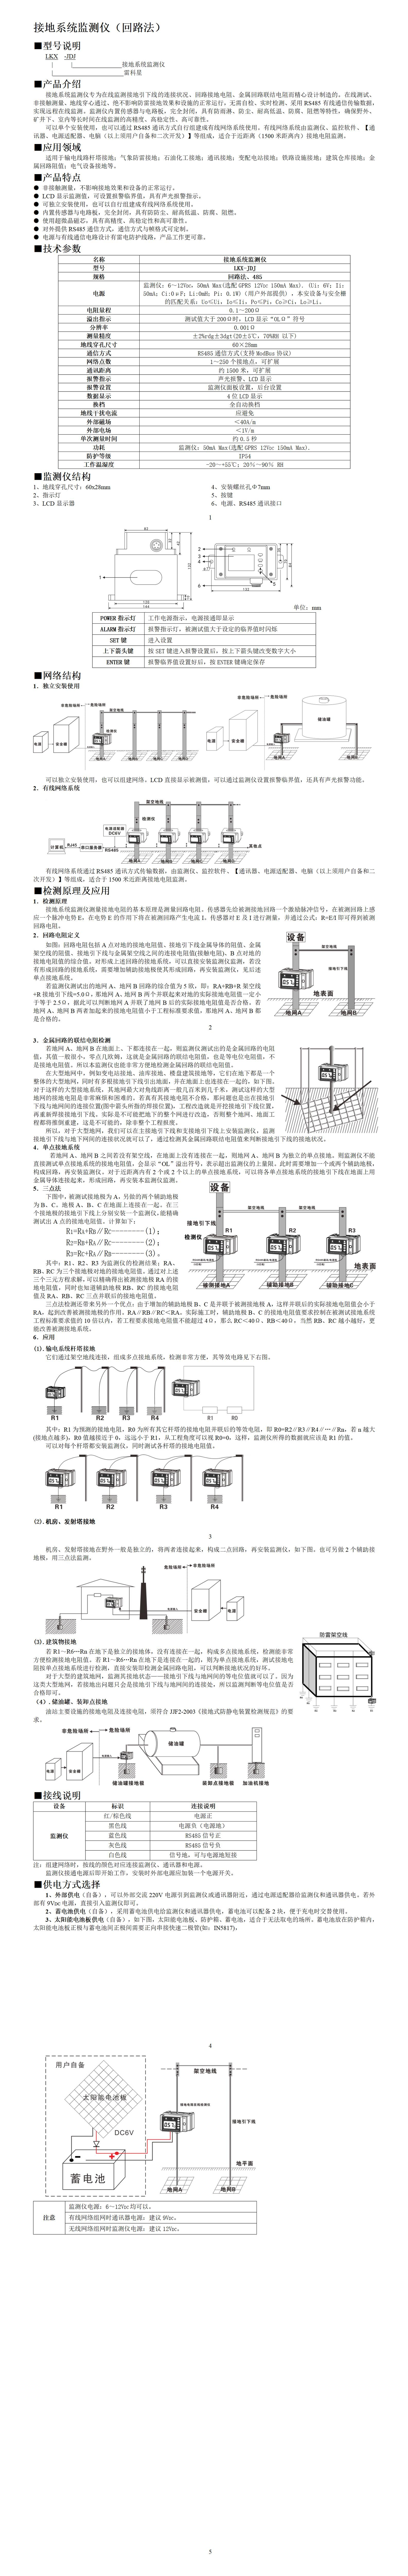 10、接地系统监测仪——回路法_01.jpg